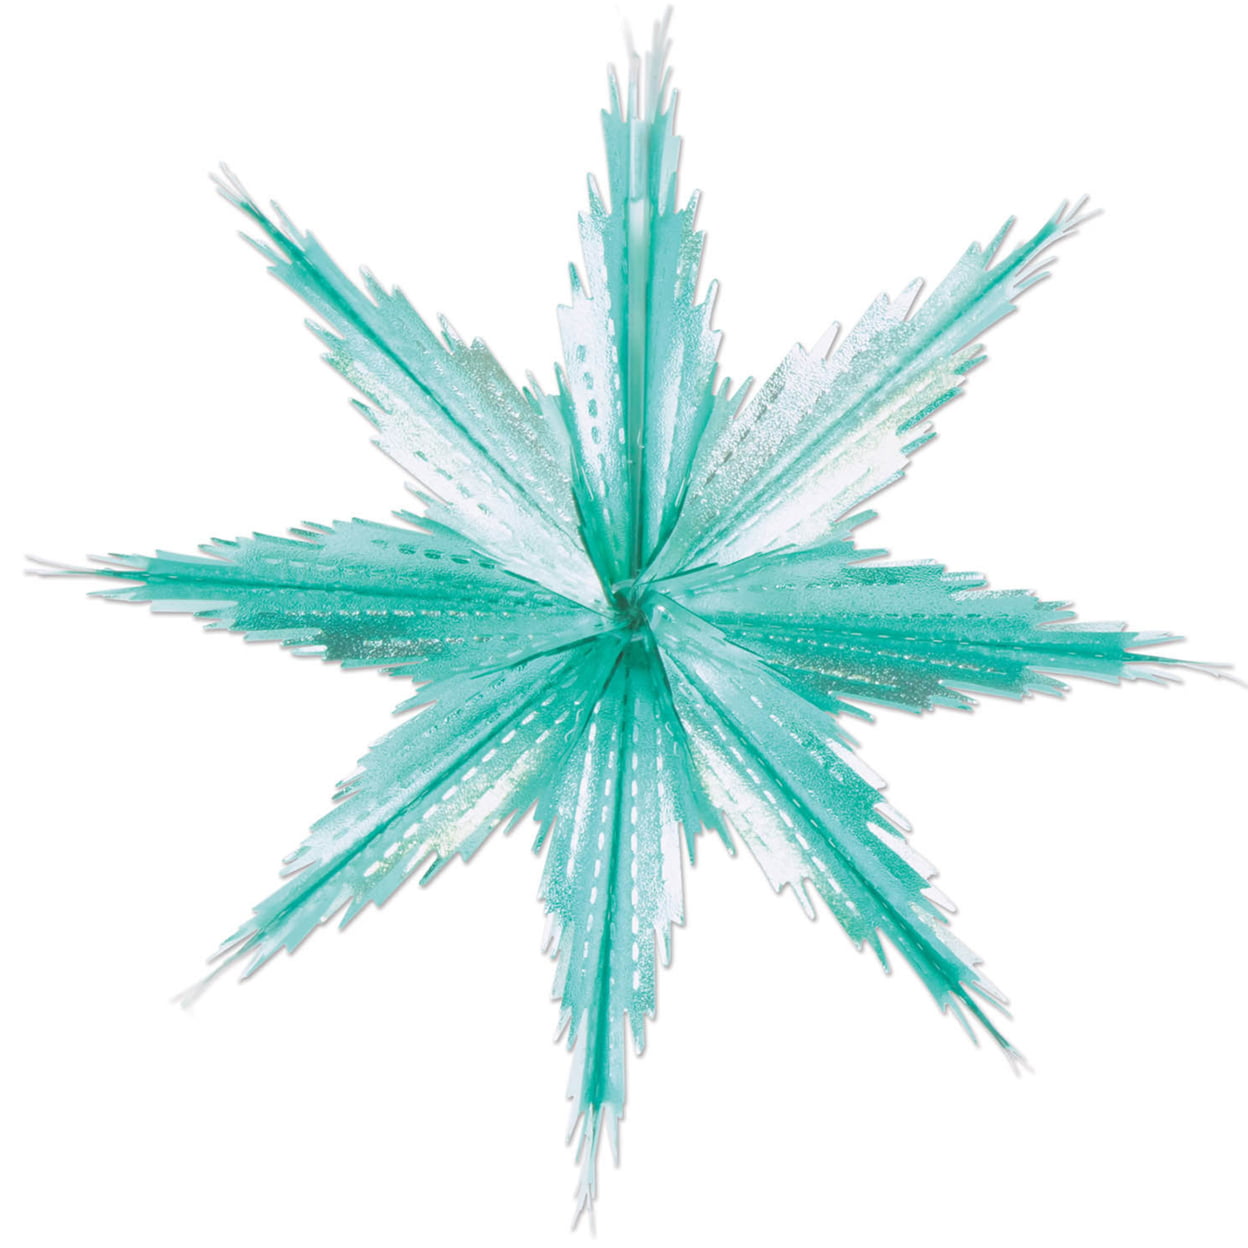 2181791 2-tone Metallic Snowflakes - Turquoise & Silver Case Of 12